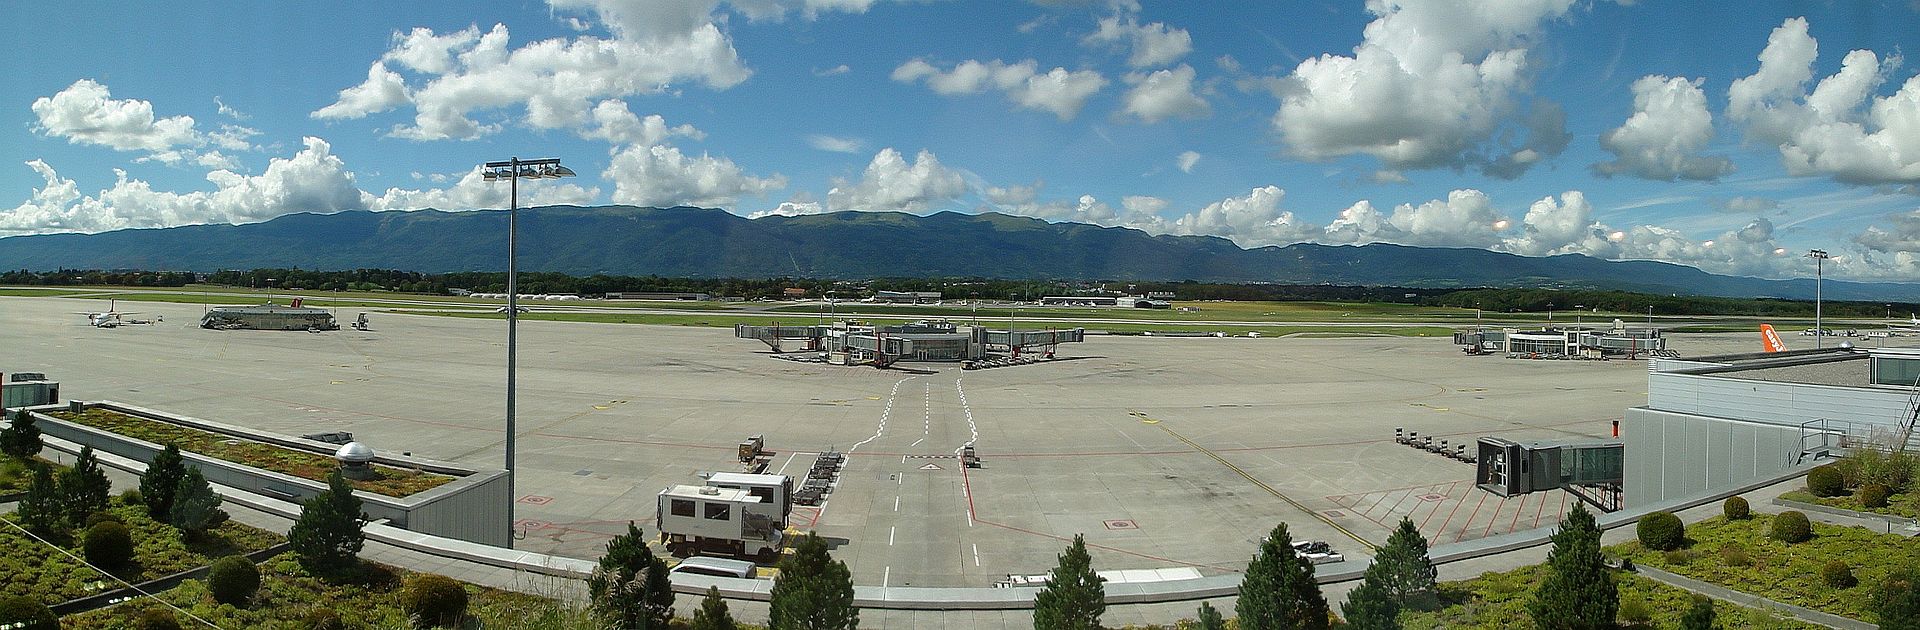 Aéroport de Genève : une petite fugueuse ruse pour monter dans un avion